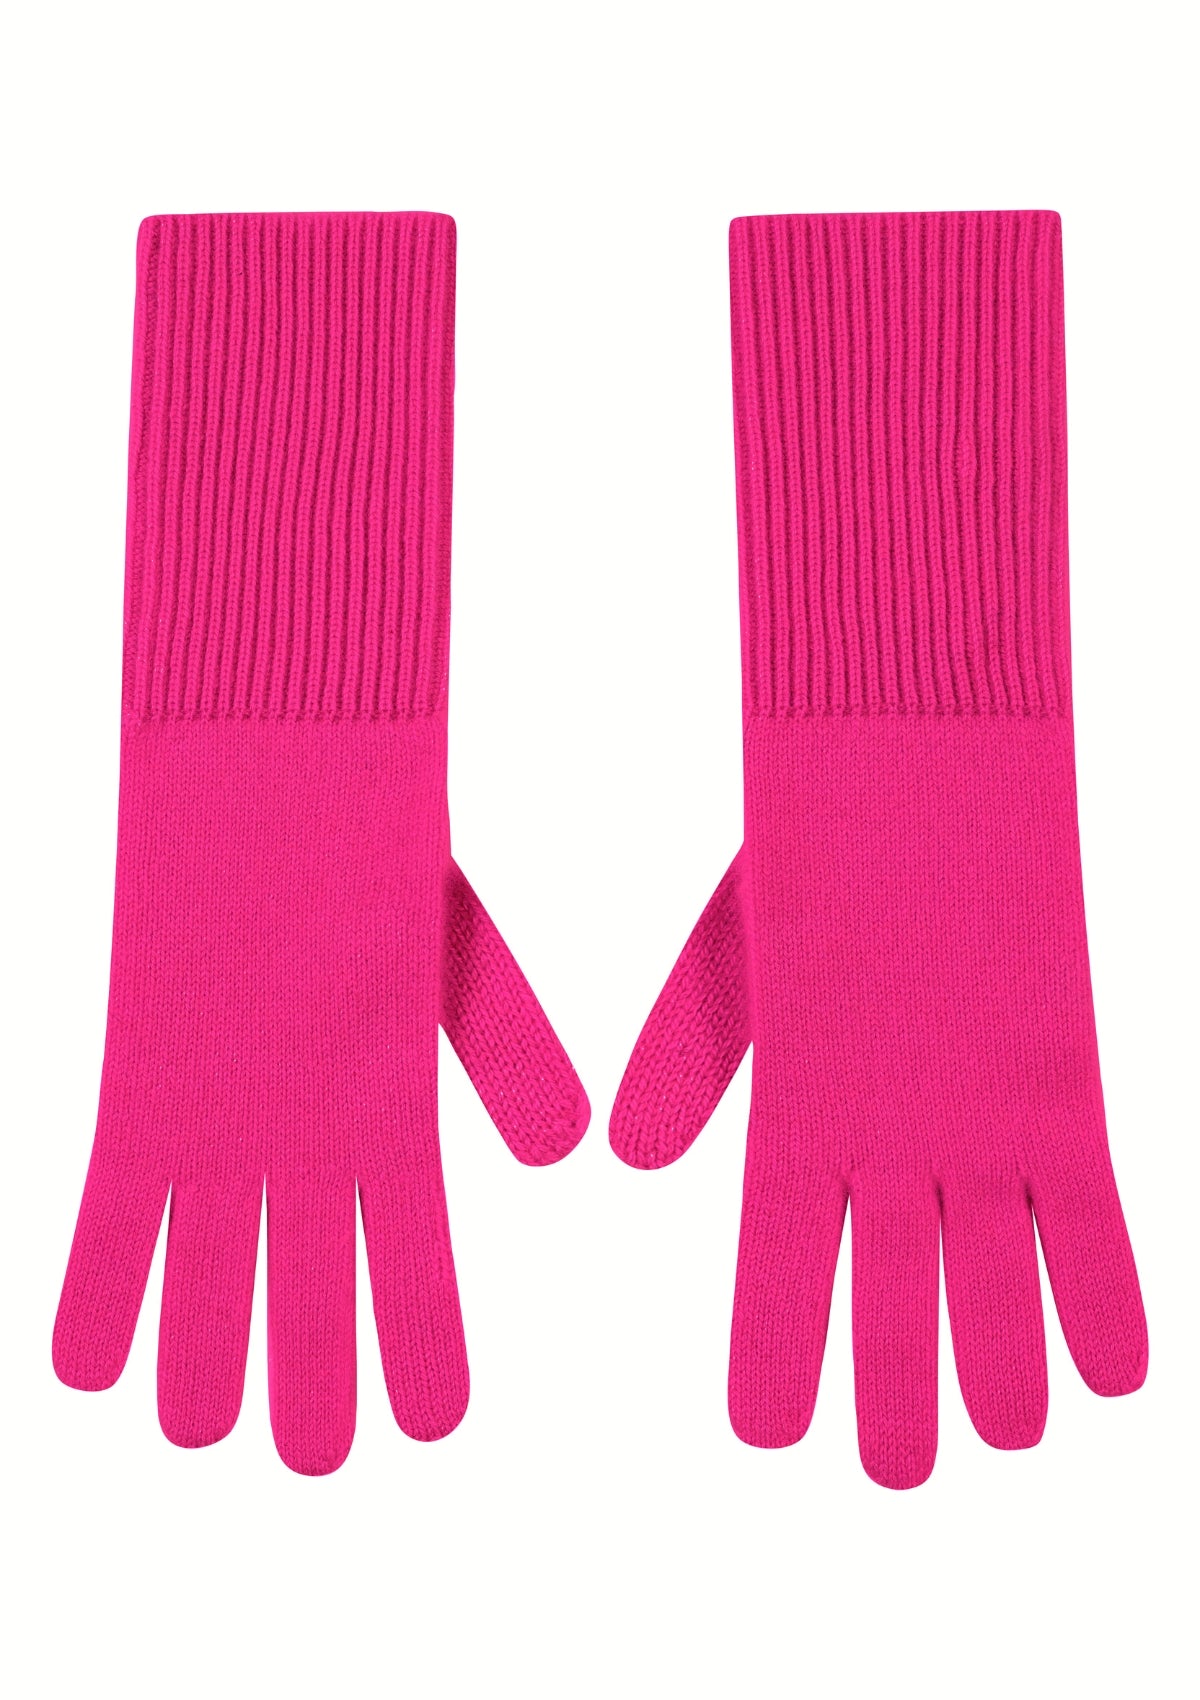 Cashmere Glove in Cherry Pink